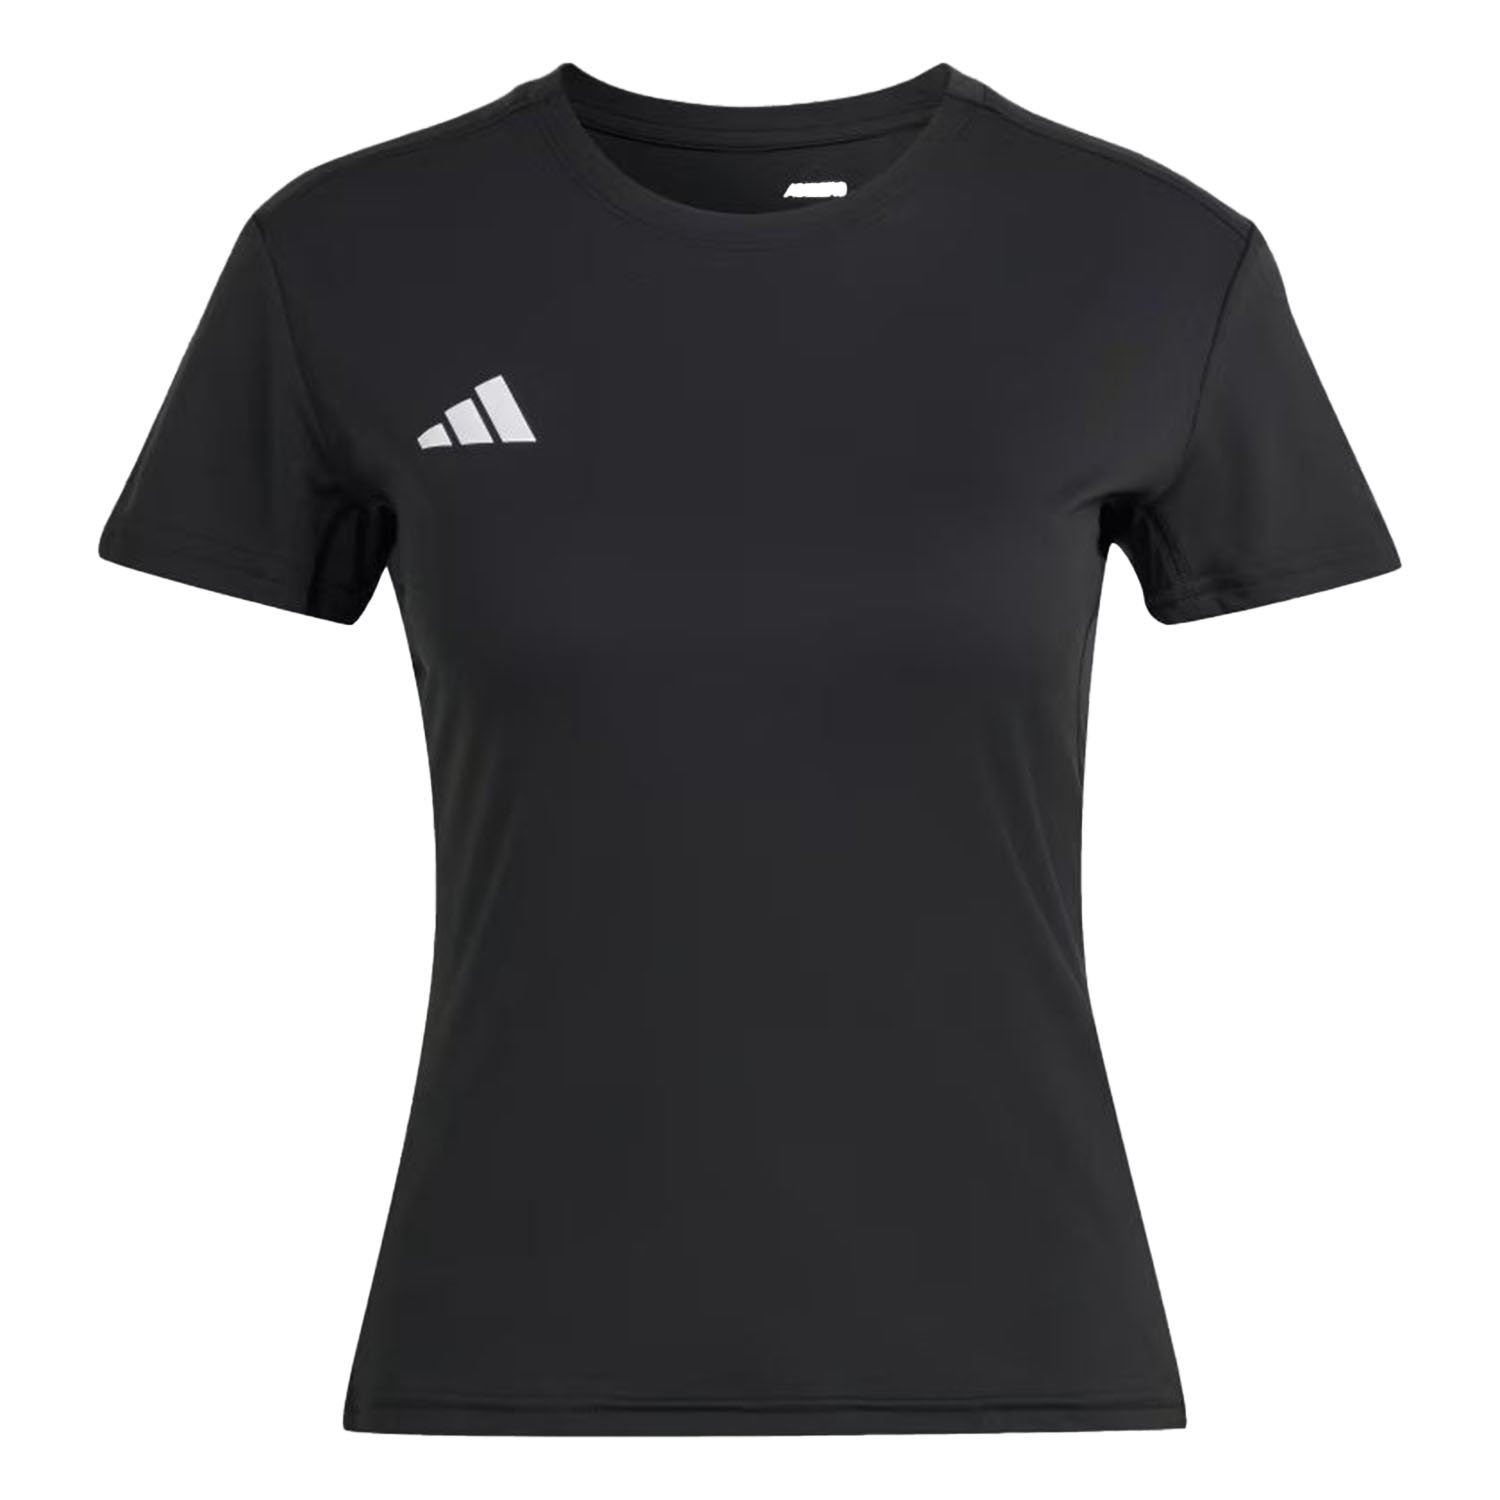 Adidas Adizero Kadın Tişört - Siyah - 1